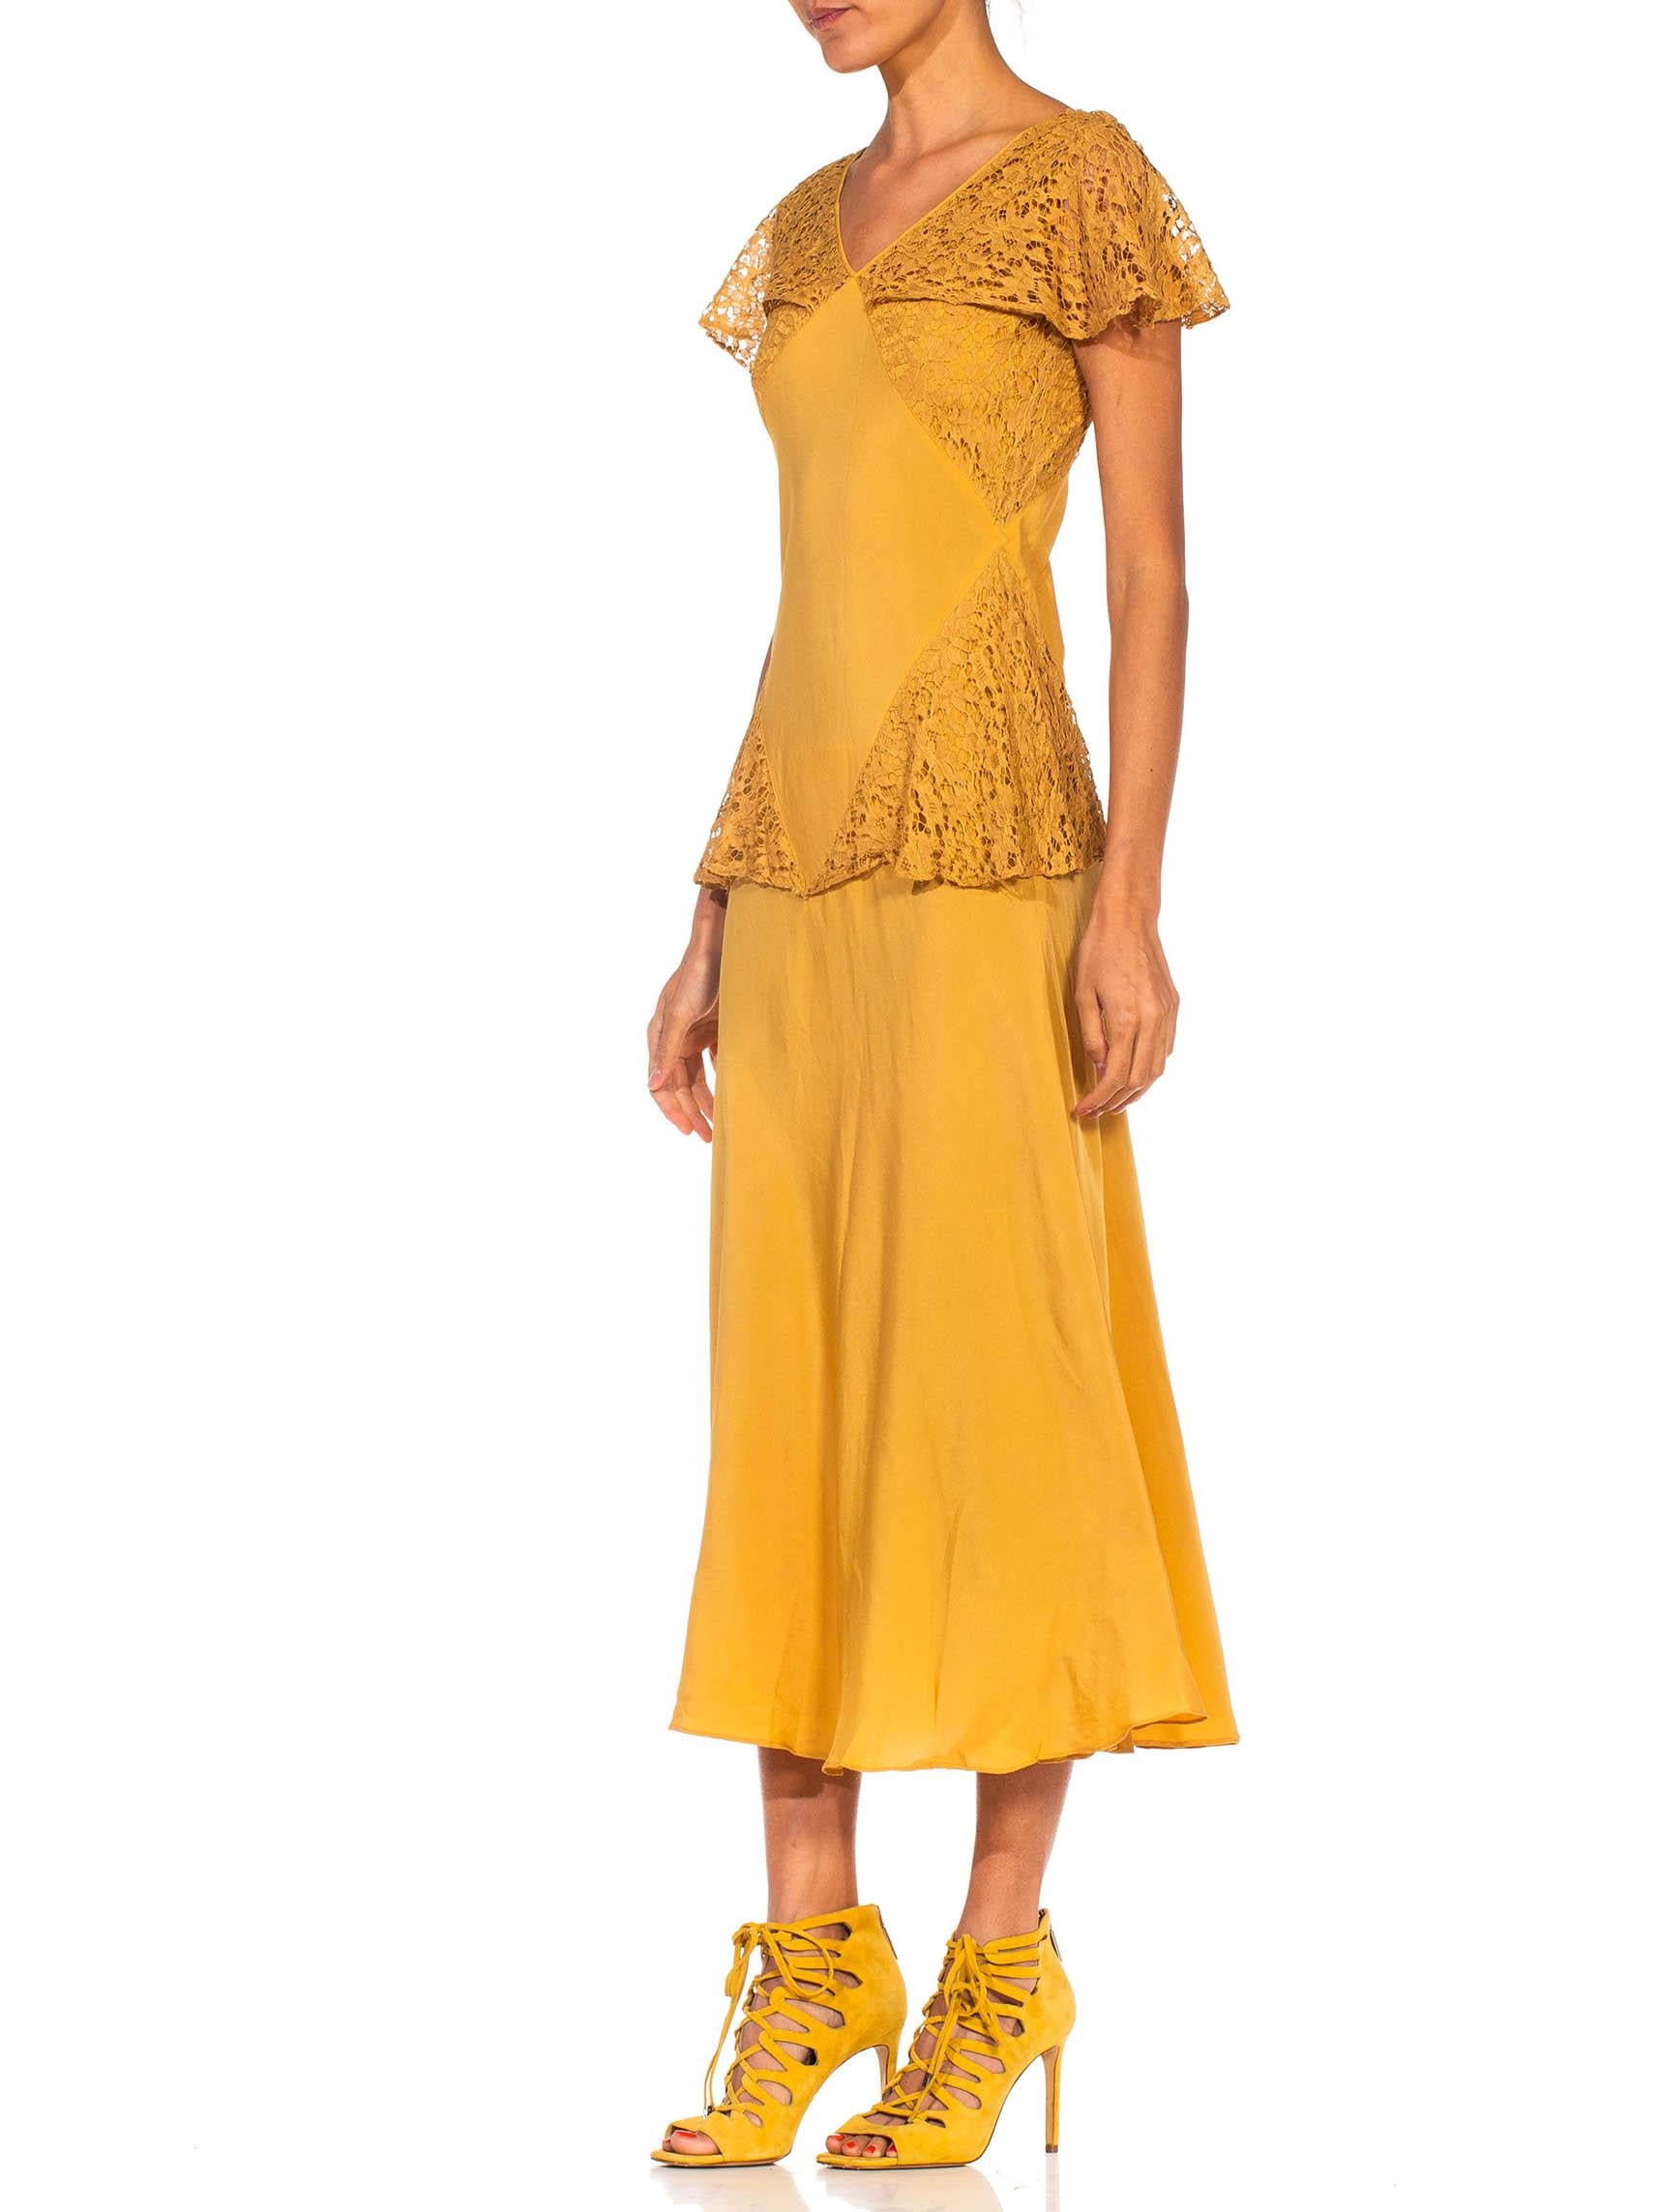 strapless yellow peplum dress